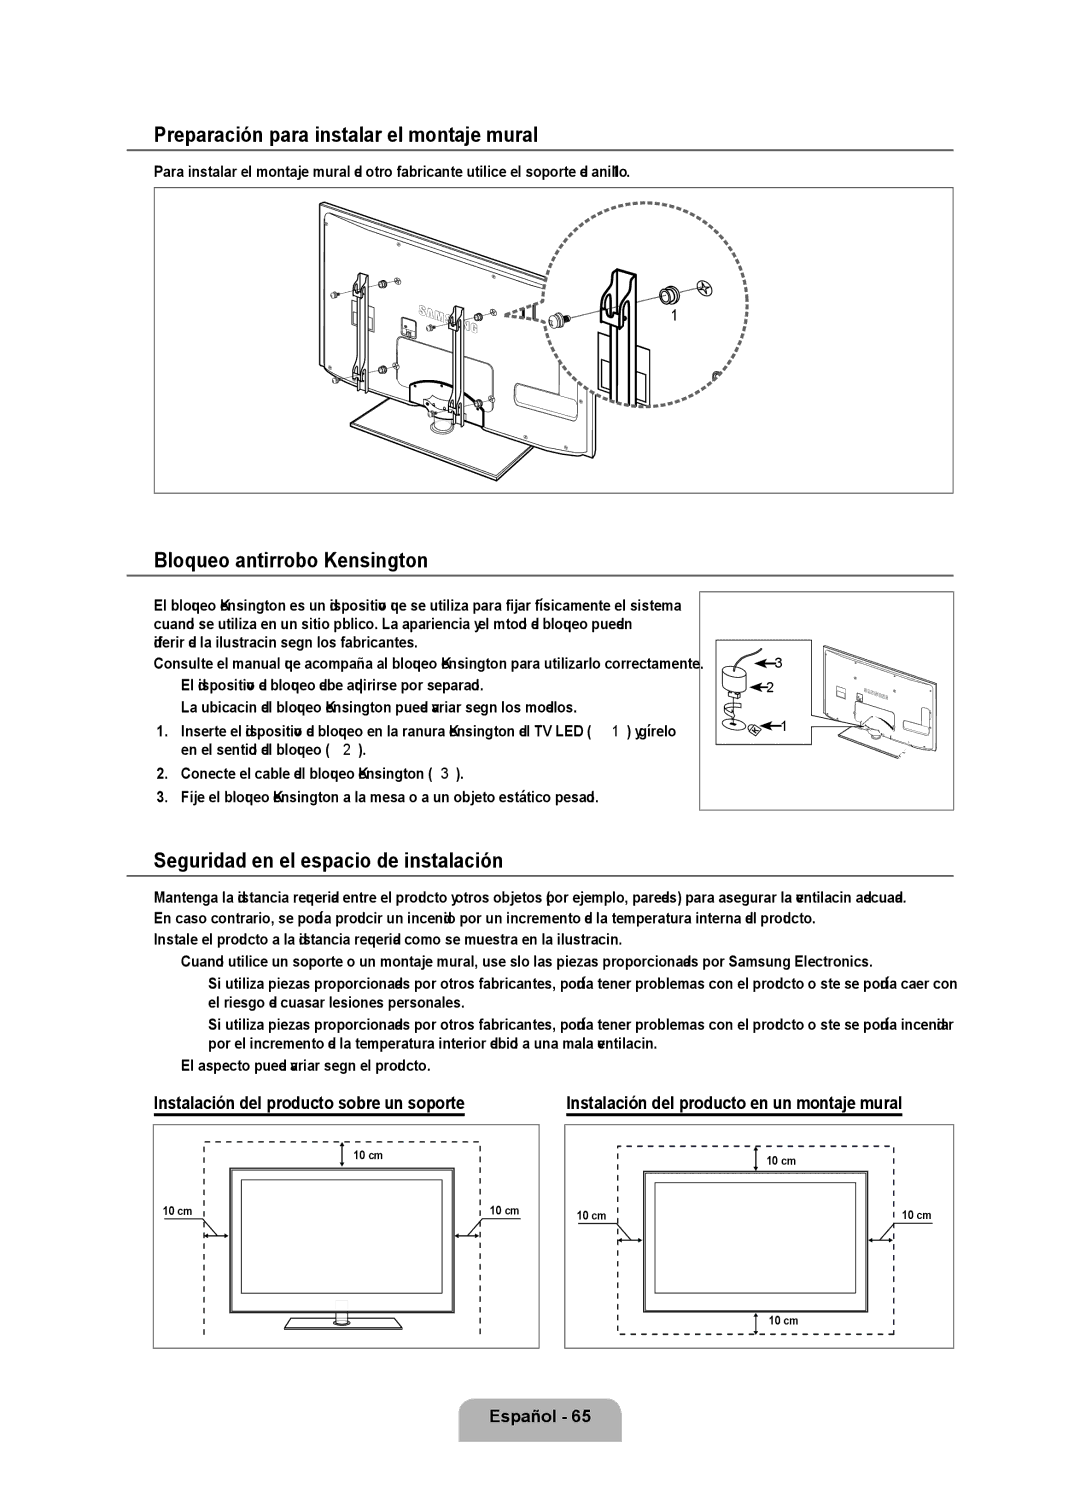 Samsung Series L6 user manual Preparación para instalar el montaje mural, Bloqueo antirrobo Kensington 